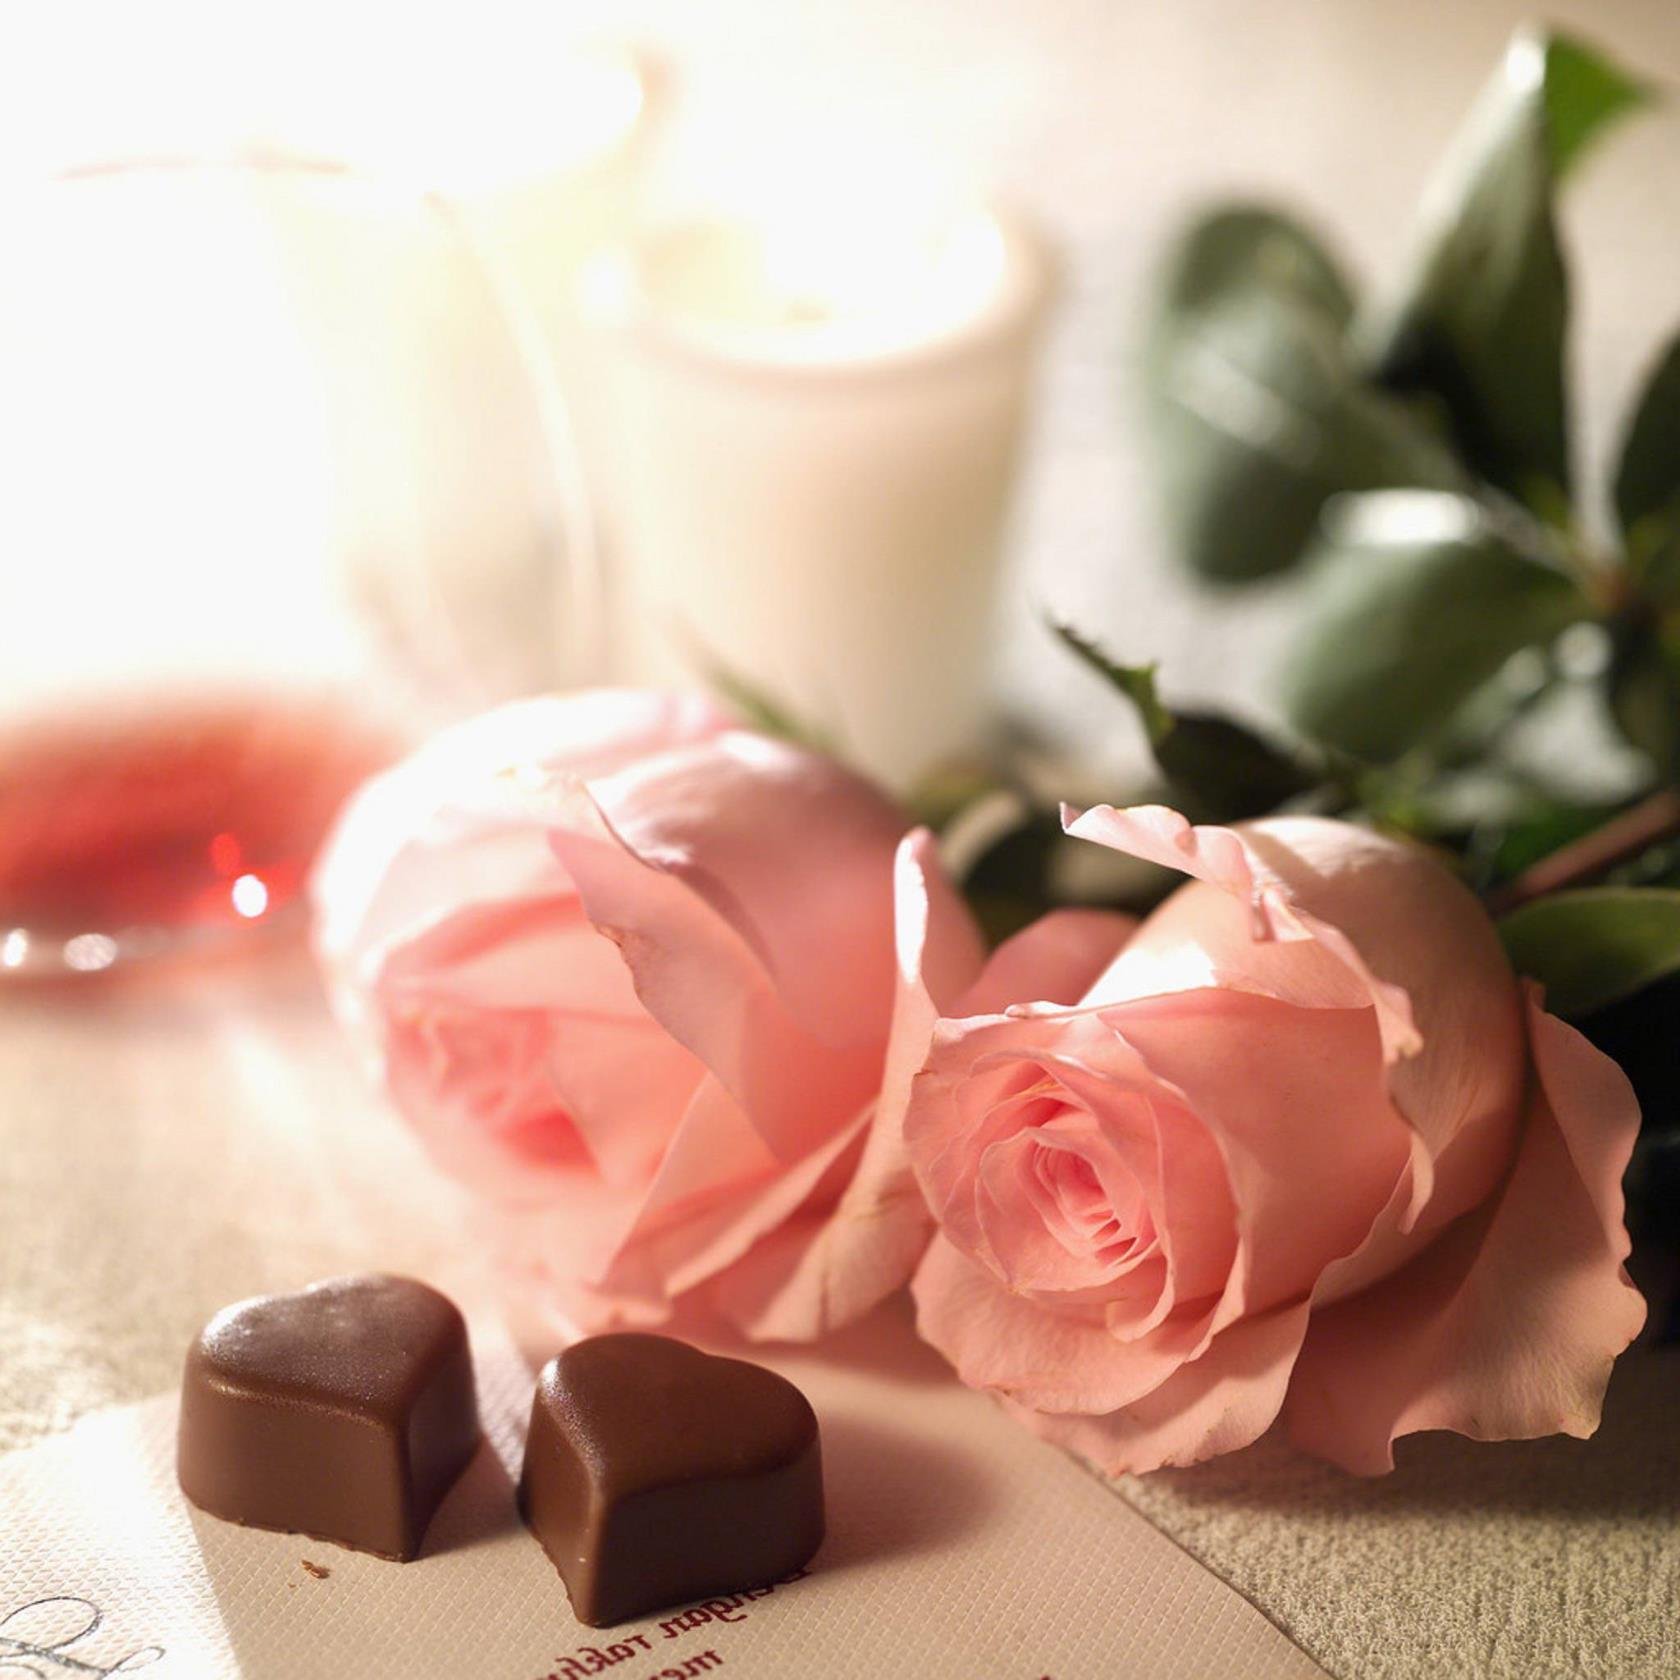 Хорошего настроения своими словами девушке. Романтические цветы. Утренние цветы для любимой. Розы и шоколад. Нежные открытки с пожеланиями.